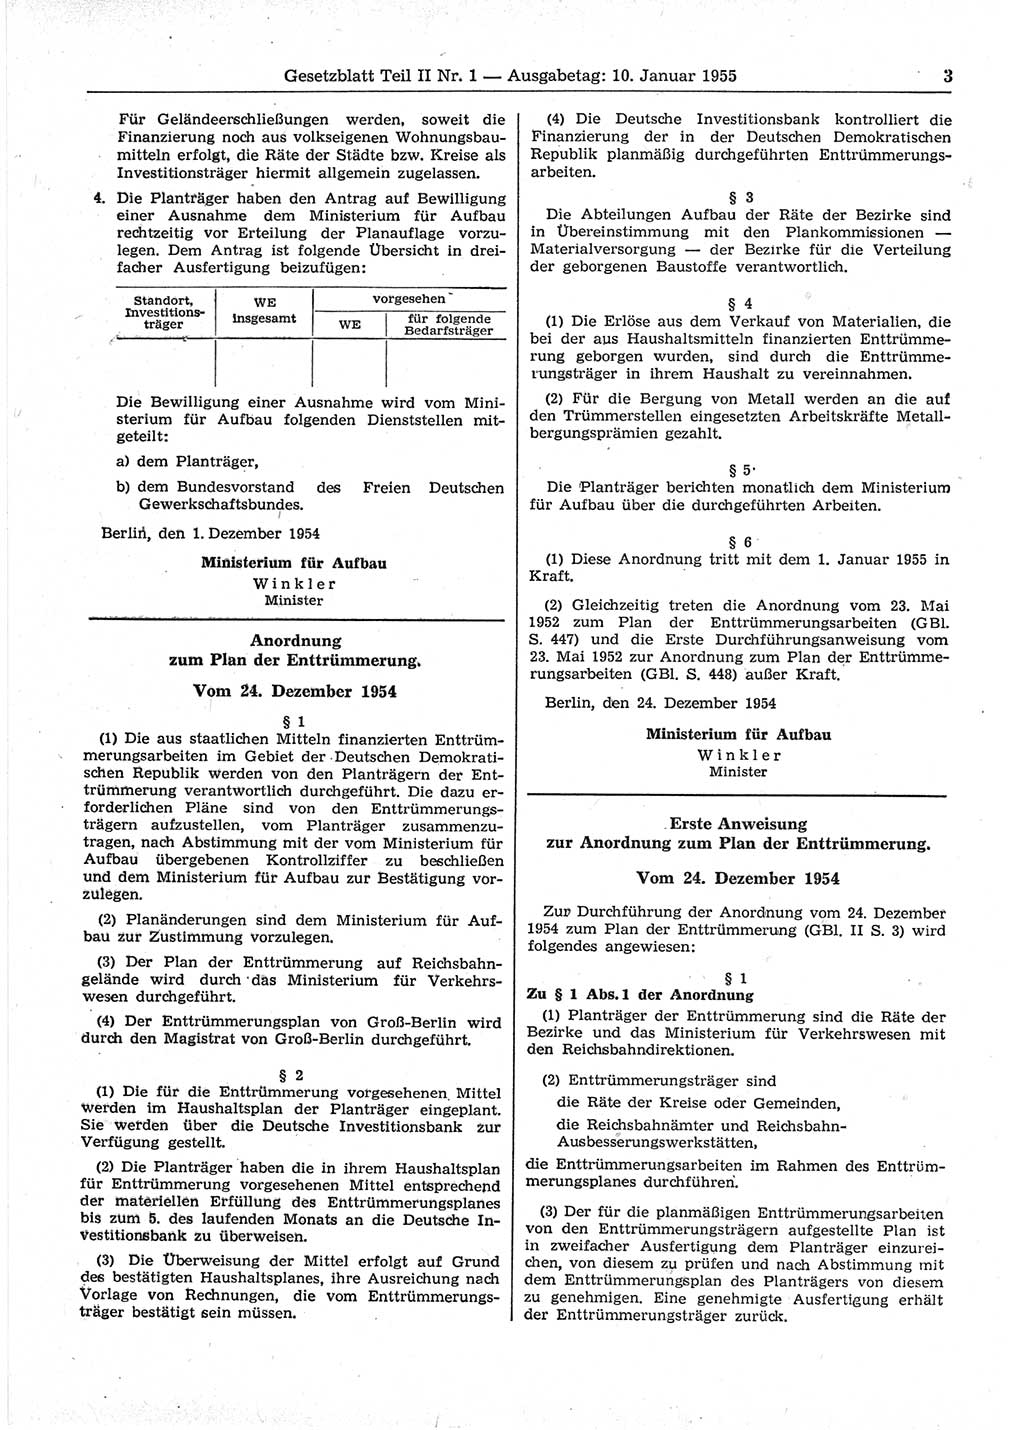 Gesetzblatt (GBl.) der Deutschen Demokratischen Republik (DDR) Teil ⅠⅠ 1955, Seite 3 (GBl. DDR ⅠⅠ 1955, S. 3)